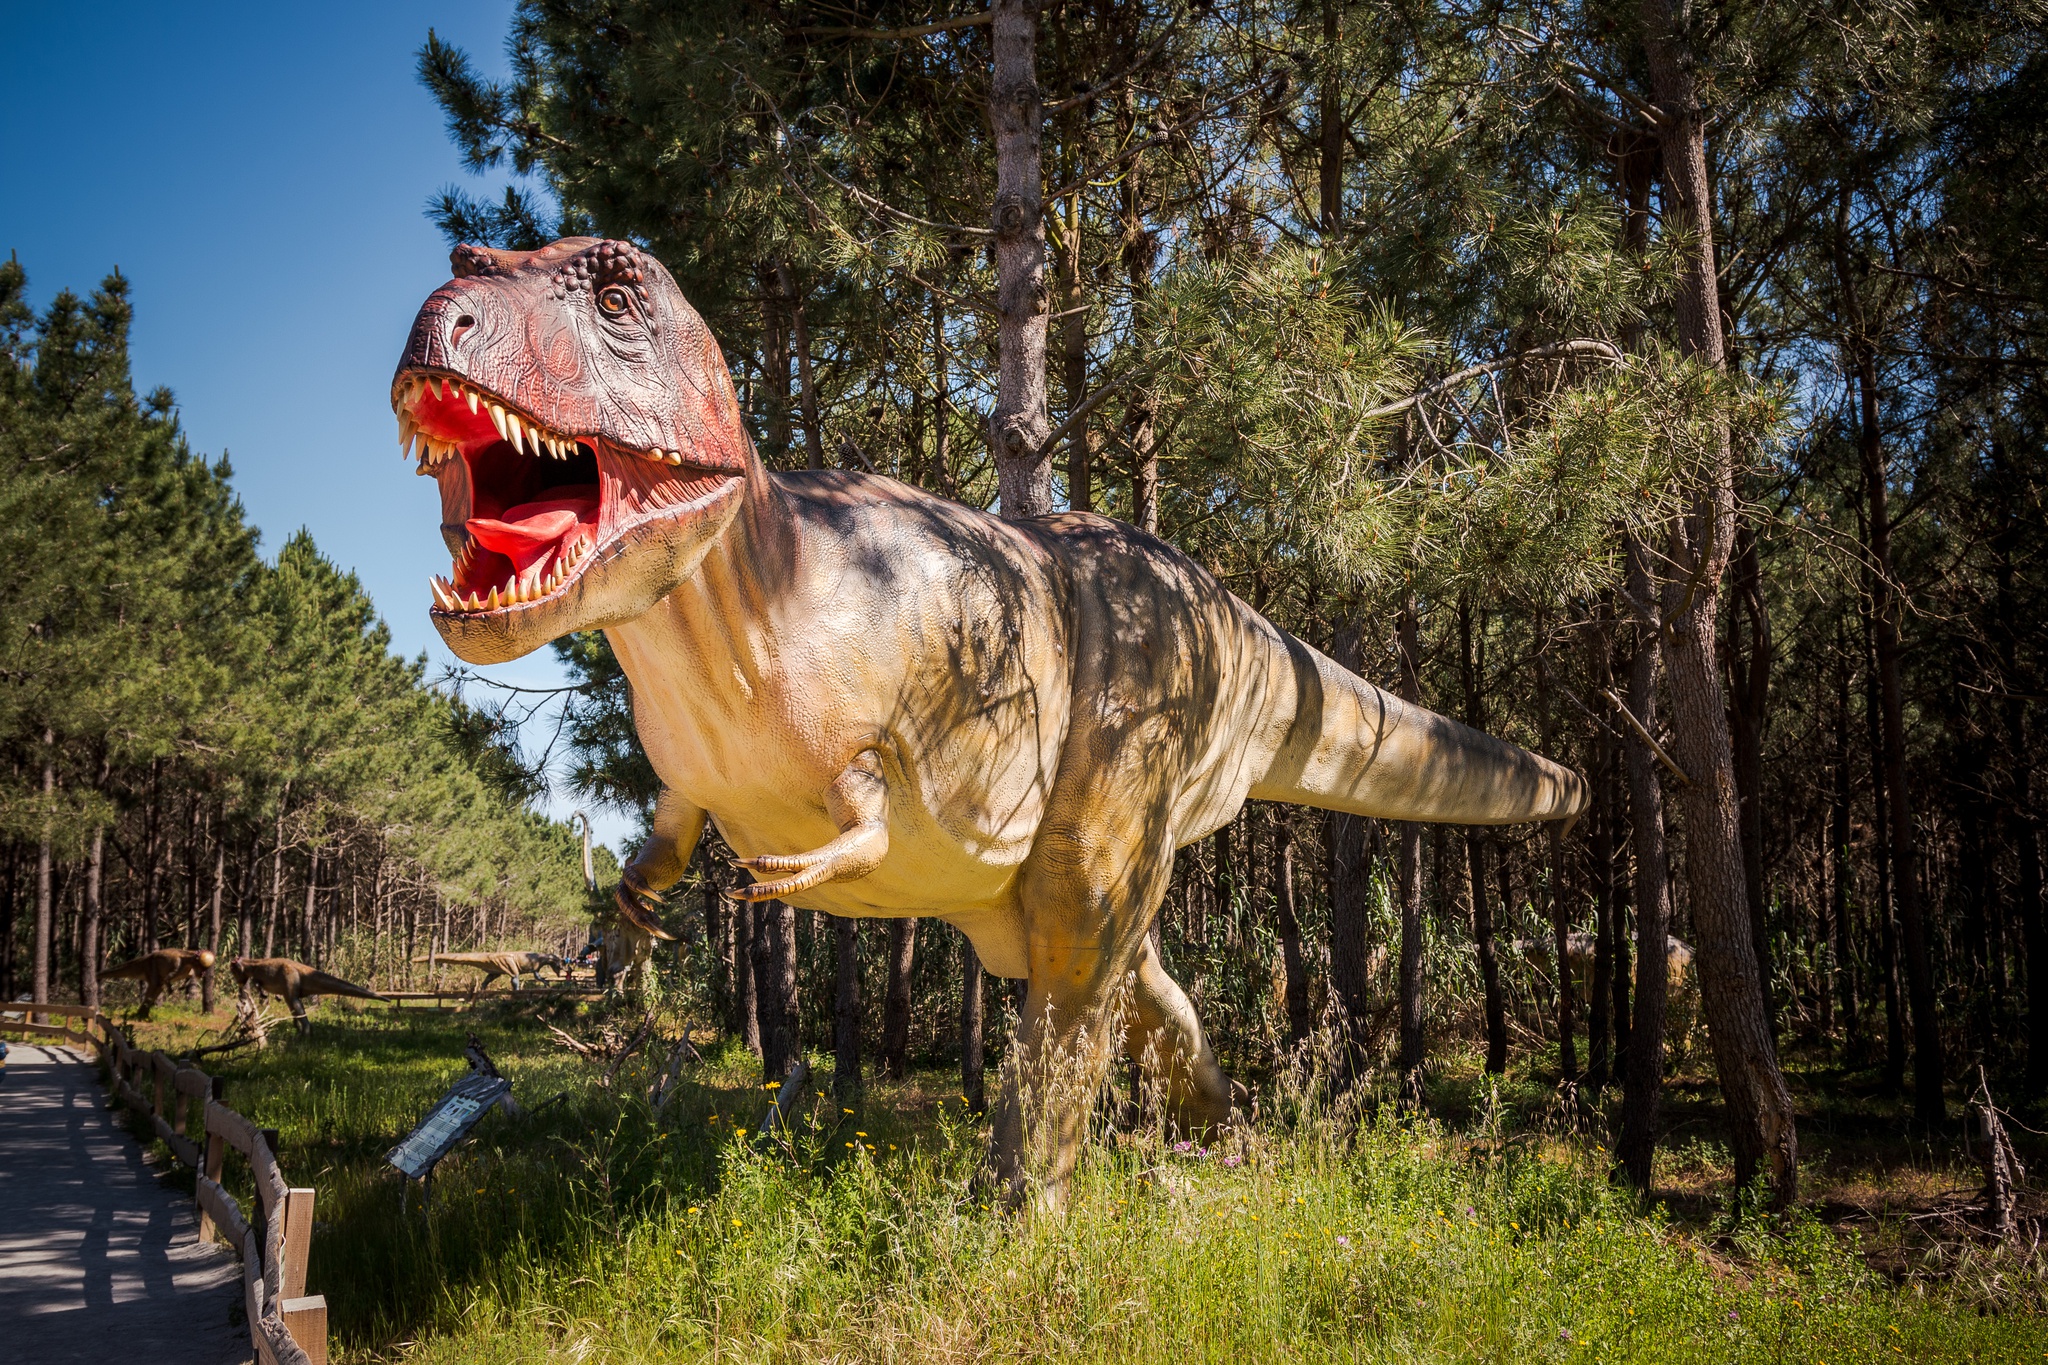 Dinossauros jogo para crianças e miúdos : descobrir o mundo